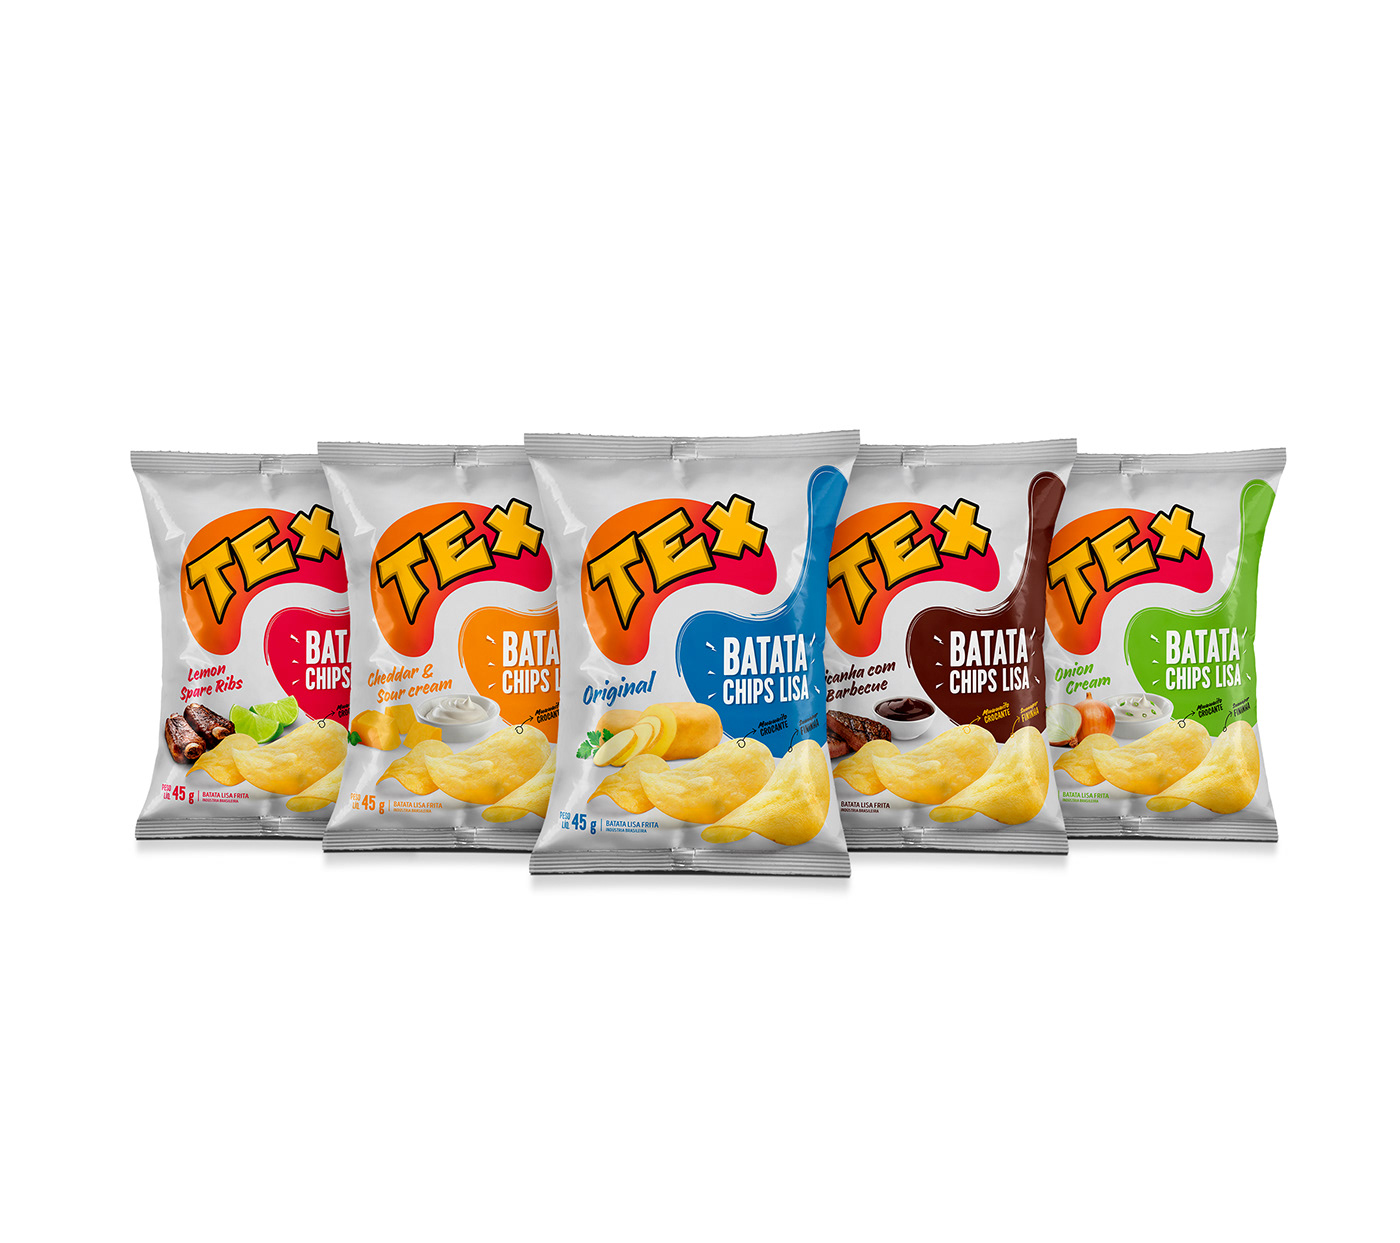 Batata chips potato snack Packaging embalagem social media mídia social instagram free mockup 